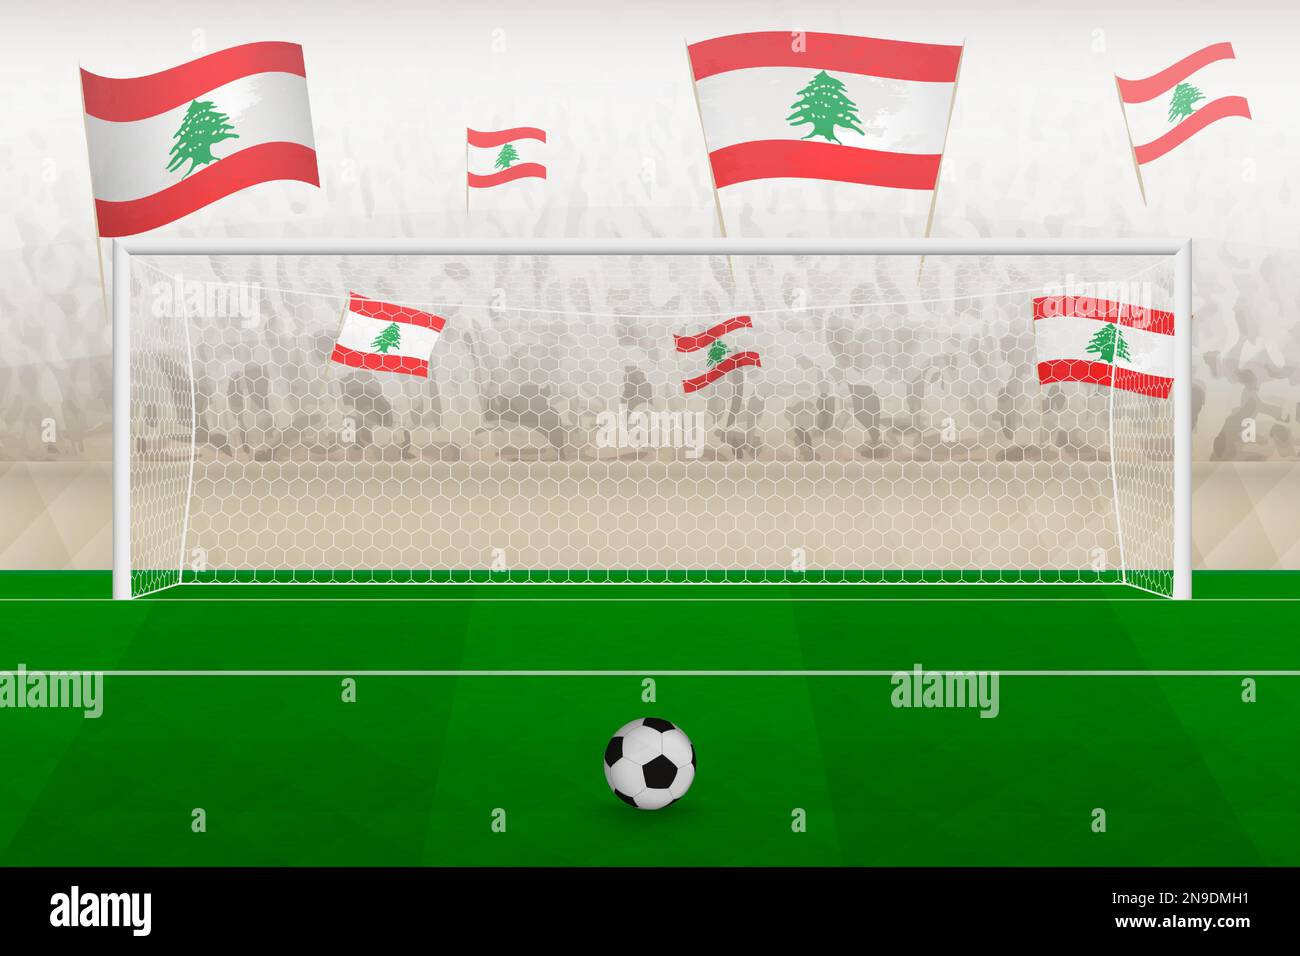 Les fans de l'équipe de football du Liban avec des drapeaux du Liban applaudissent au stade, le concept de penalty kick dans un match de football. Illustration de vecteur sportif. Illustration de Vecteur